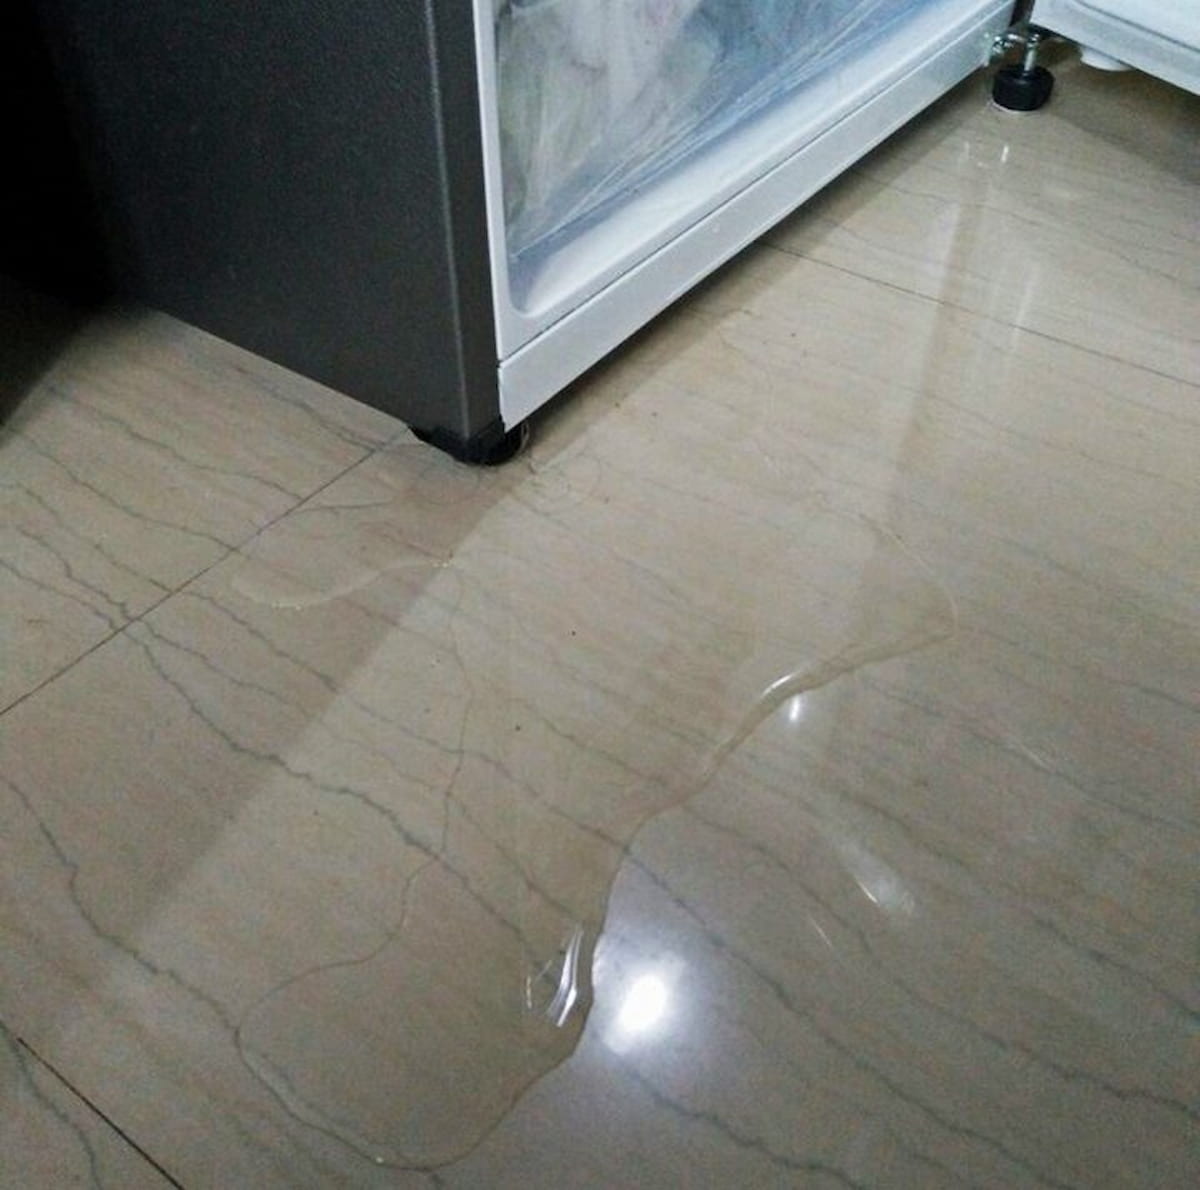 Sửa tủ lạnh Samsung bị chảy nước ngăn đá tại nhà giá bao nhiêu?